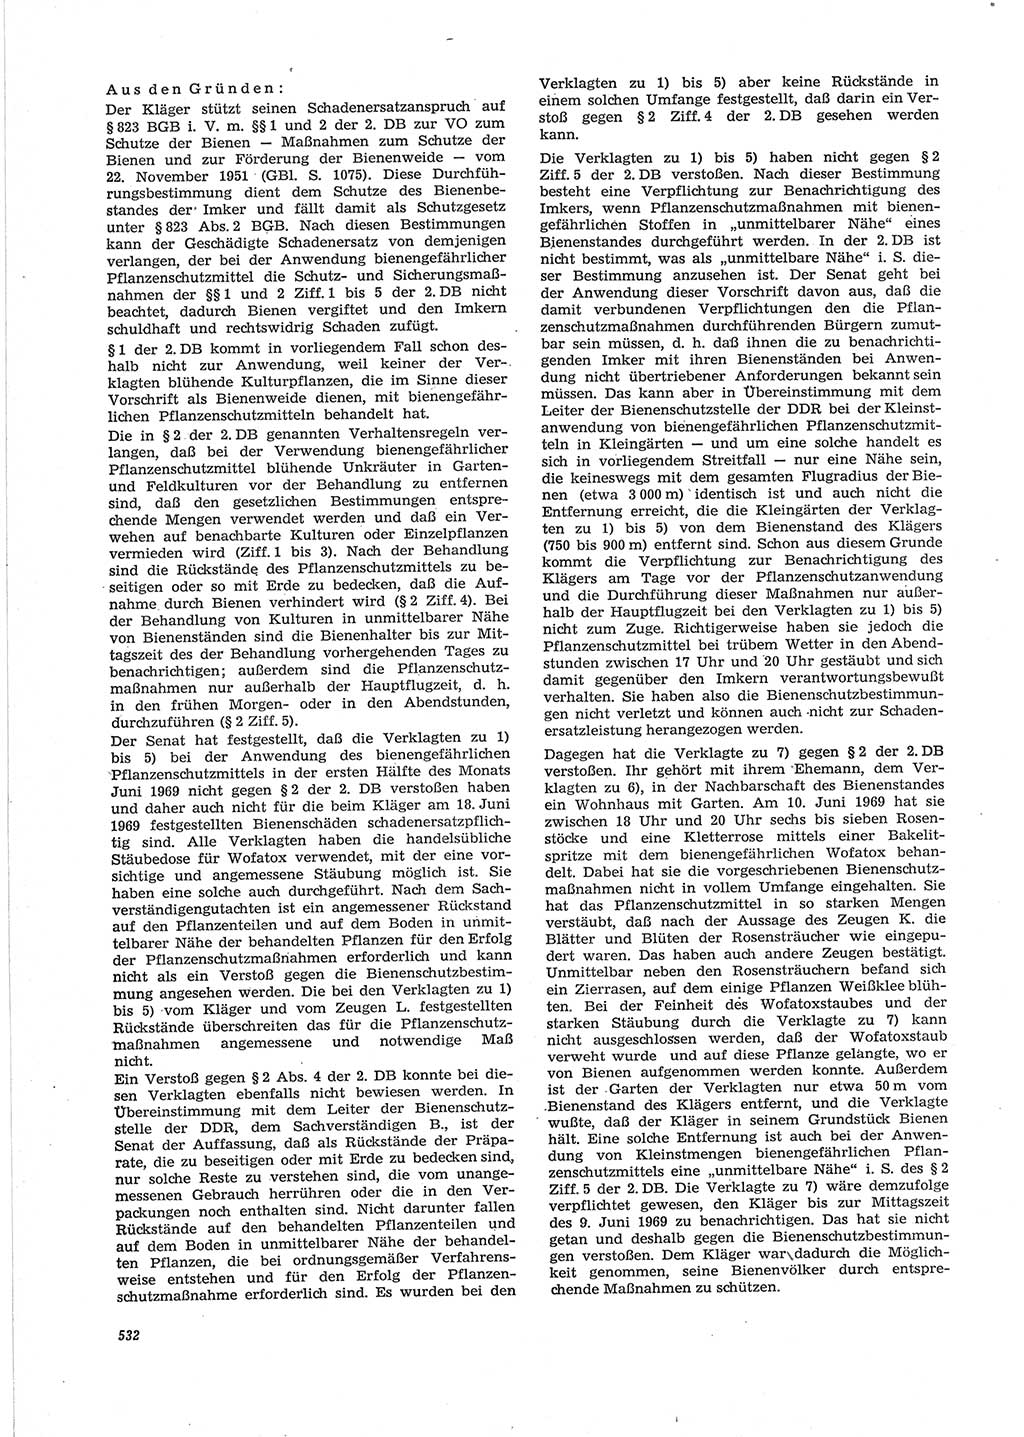 Neue Justiz (NJ), Zeitschrift für Recht und Rechtswissenschaft [Deutsche Demokratische Republik (DDR)], 28. Jahrgang 1974, Seite 532 (NJ DDR 1974, S. 532)